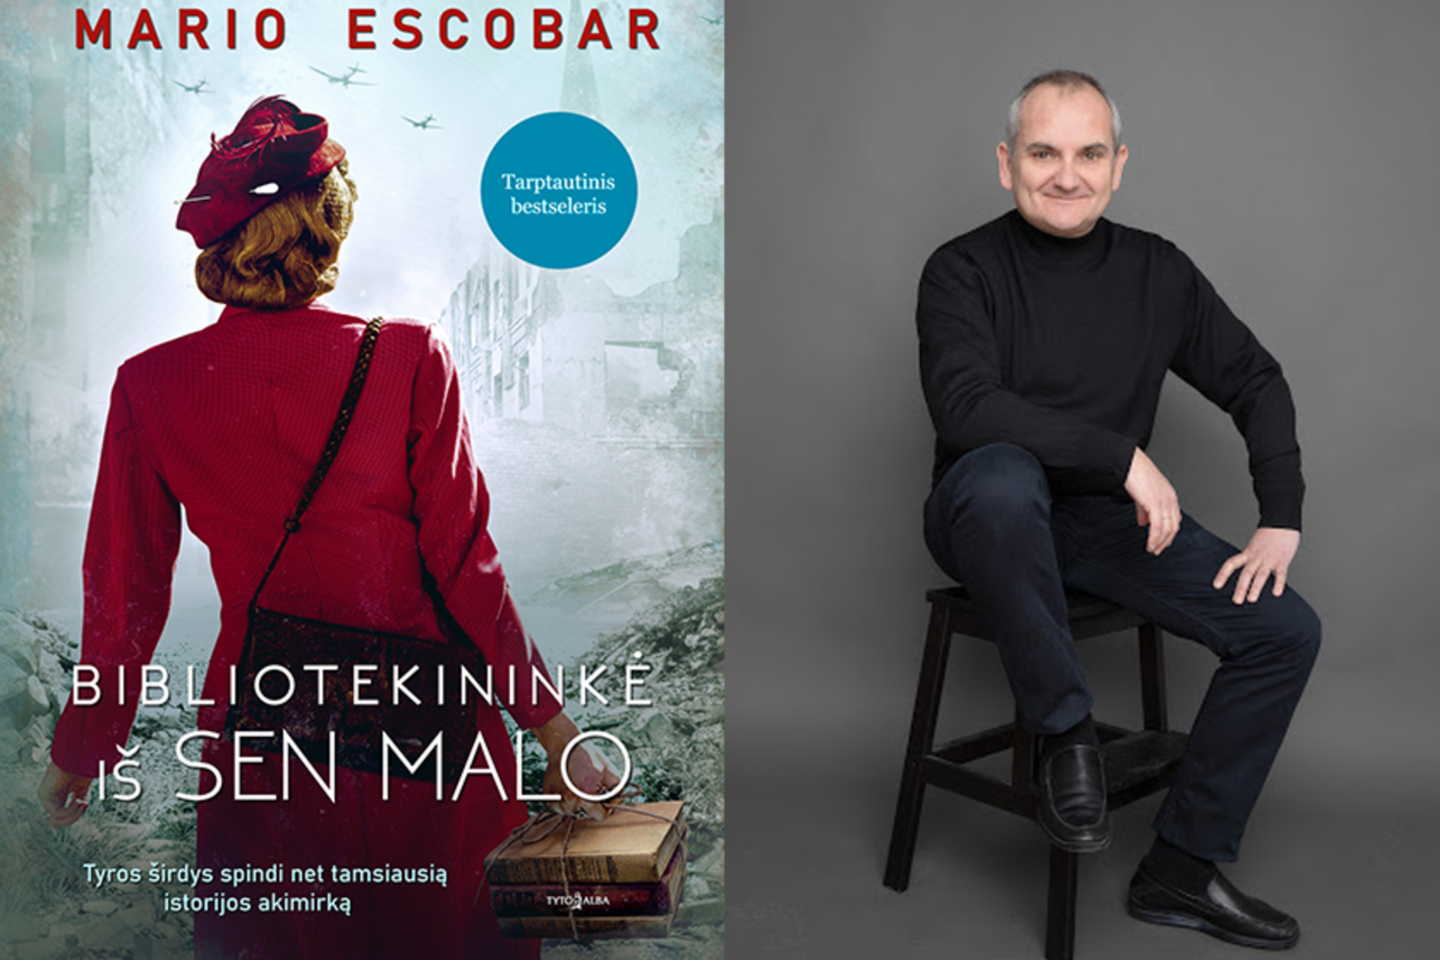 M.Escobaro romanas „Bibliotekininkė iš Sen Malo“ – empatijos kupina karo metų istorija apie tai, kad net siaučiant didžiausiam blogiui išsaugotas žmogiškumas gali labai daug.